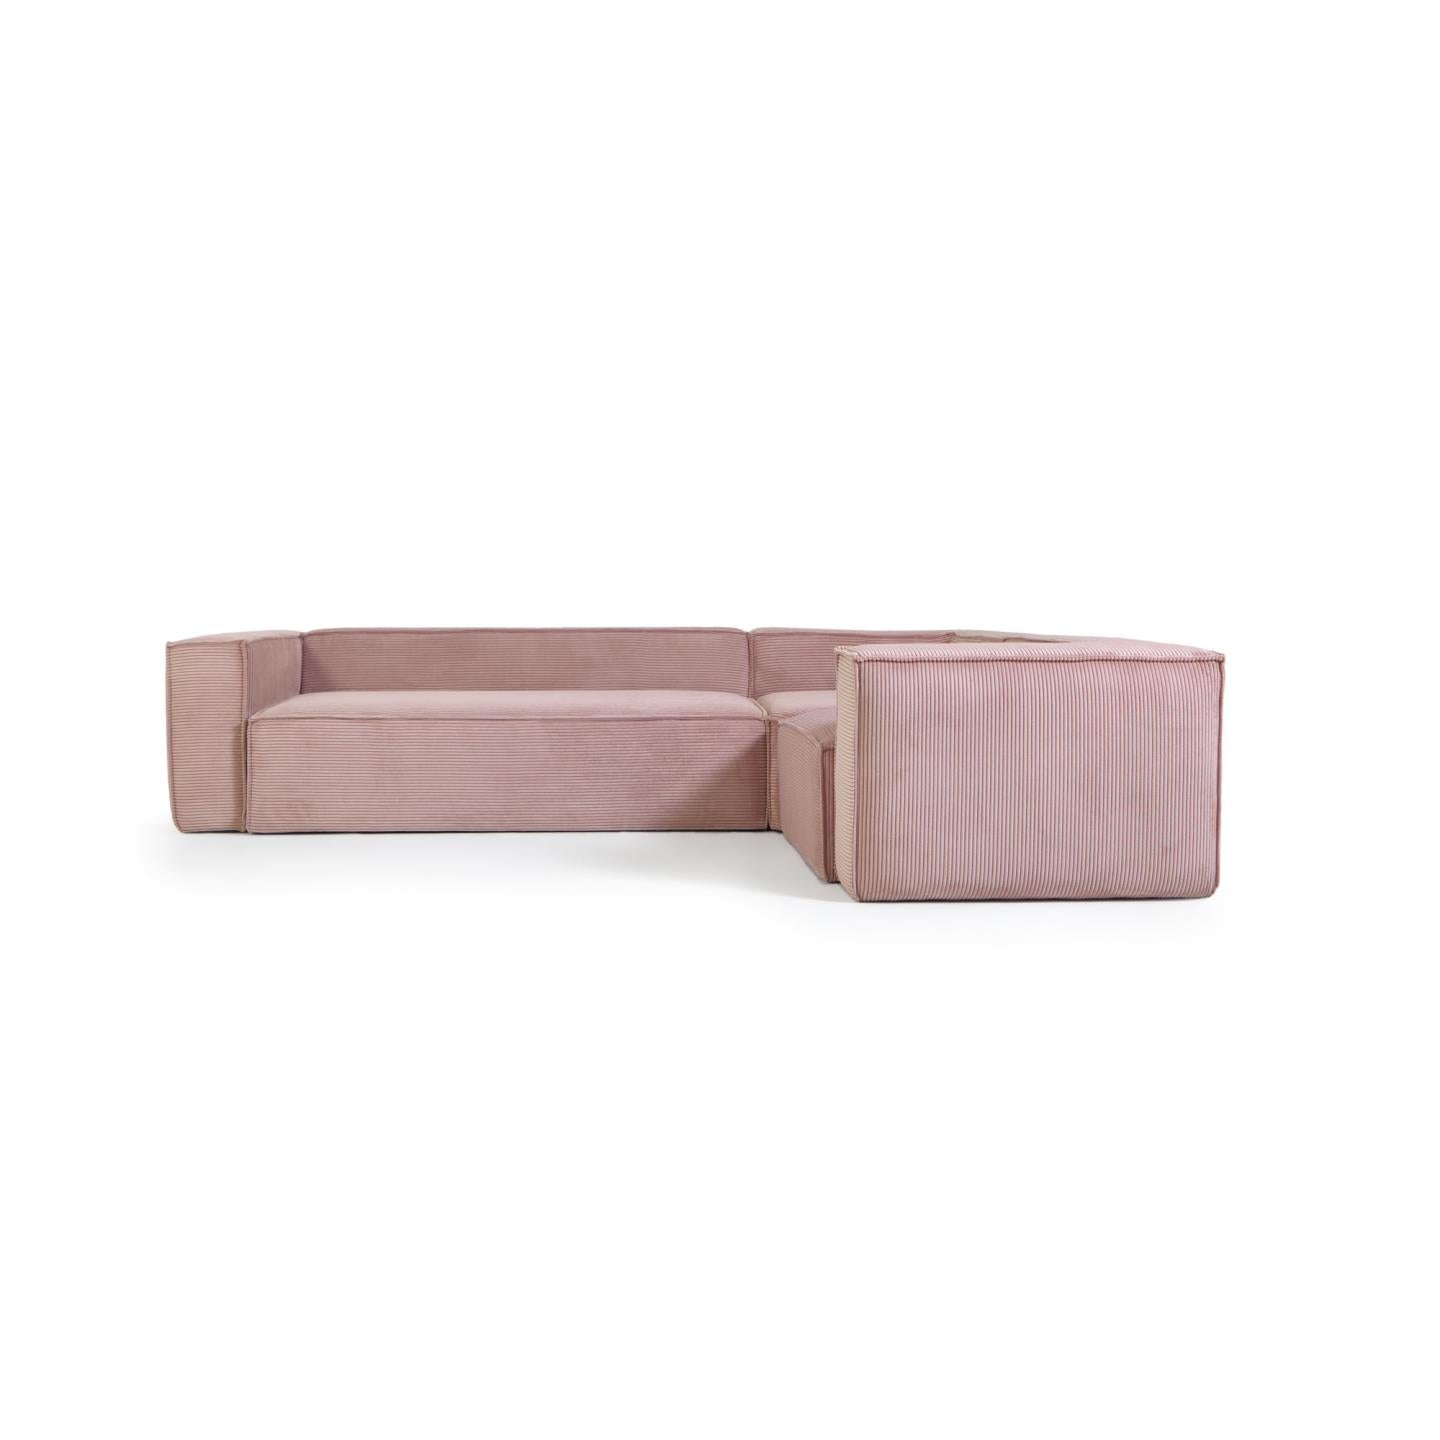 Blok 4 személyes sarokkanapé rózsaszín, széles varrású kordbársonyból, 320 x 230 cm / 230 x 320 cm